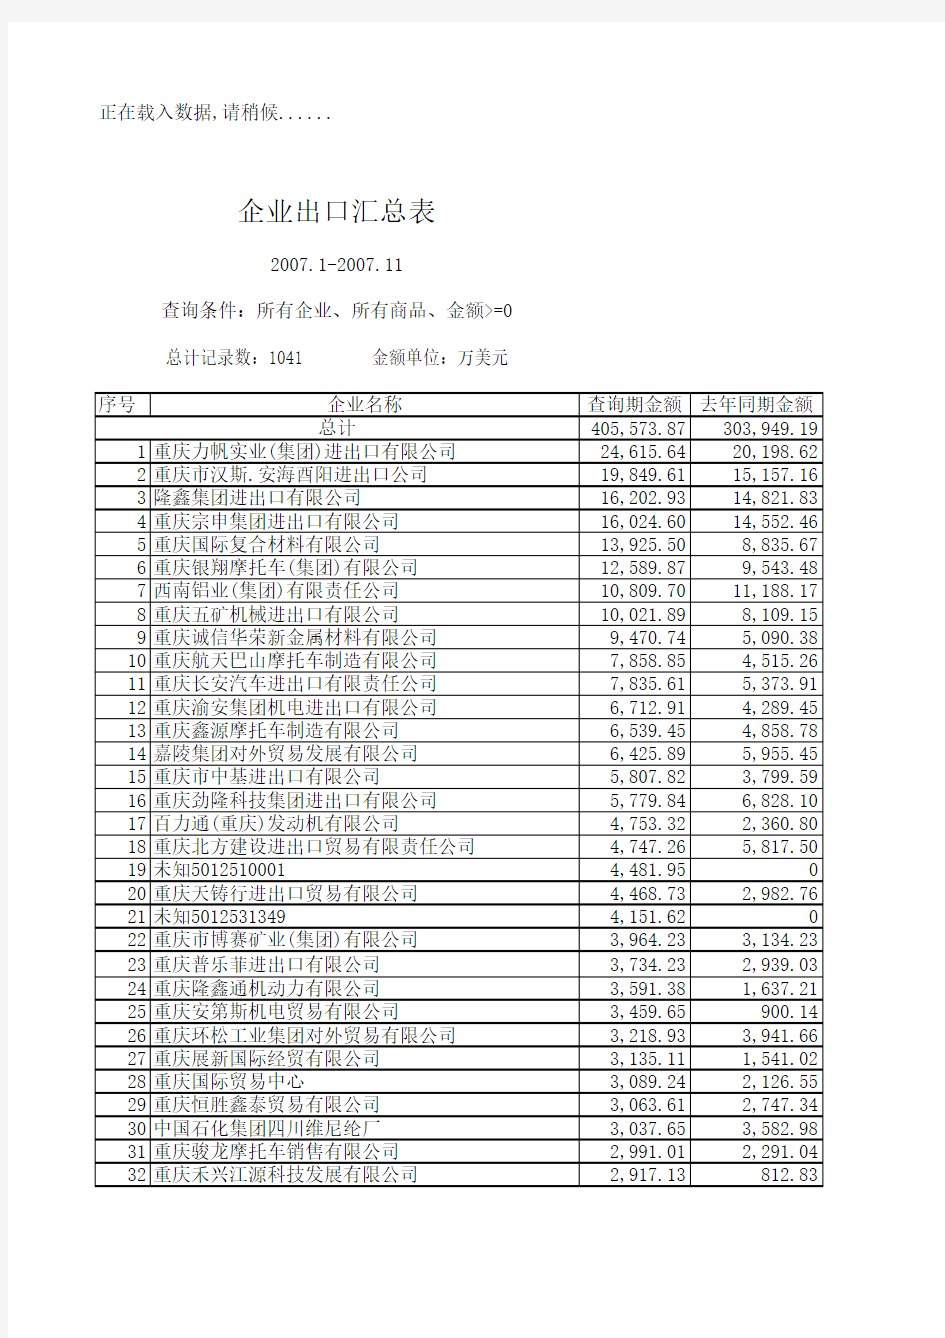 2007年1-11月重庆市企业进出口汇总表